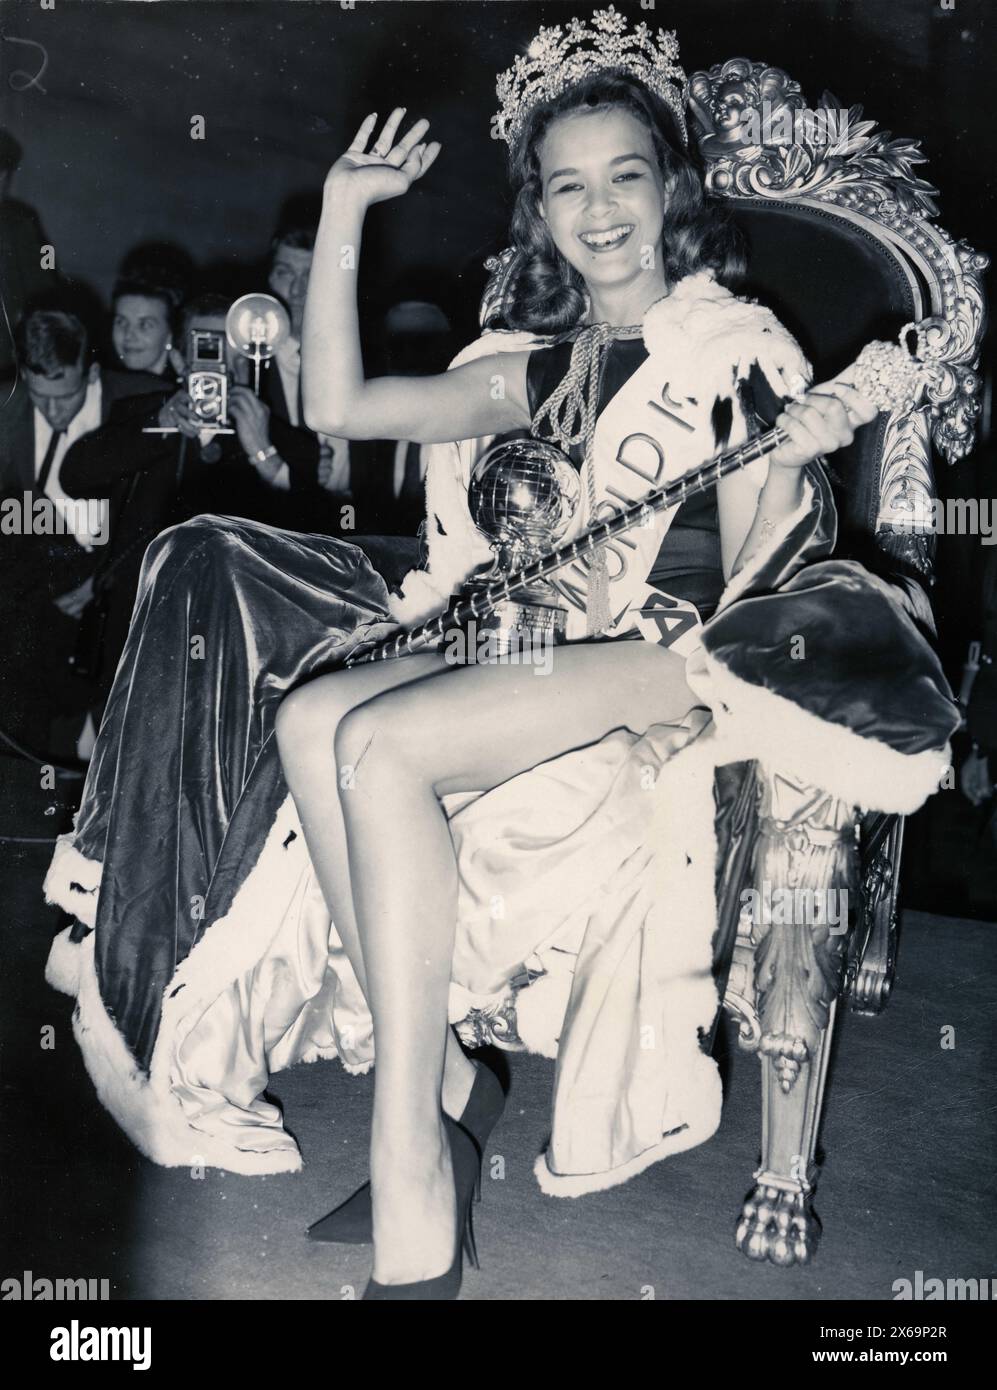 11. Juli 1963: Miss World 1963 war die 13. Ausgabe des Miss World-Wettbewerbs, der am 7. November 1963 im Lyceum Ballroom in London stattfand. Die Siegerin CAROLE JOAN CRAWFORD aus Jamaika wurde zur Miss World 1963 gekrönt, mit dem zweiten Platz Miss New Zealand (Elaine Miscall), der dritten Miss Finland (Marja-Lilsa), dem vierten Platz Miss Denmark (Aino Korva) und dem fünften Platz Miss Sweden (Greta Quiberg). (Kreditbild: © Keystone Press Agency/ZUMA Press Wire) NUR REDAKTIONELLE VERWENDUNG! Nicht für kommerzielle ZWECKE! Stockfoto